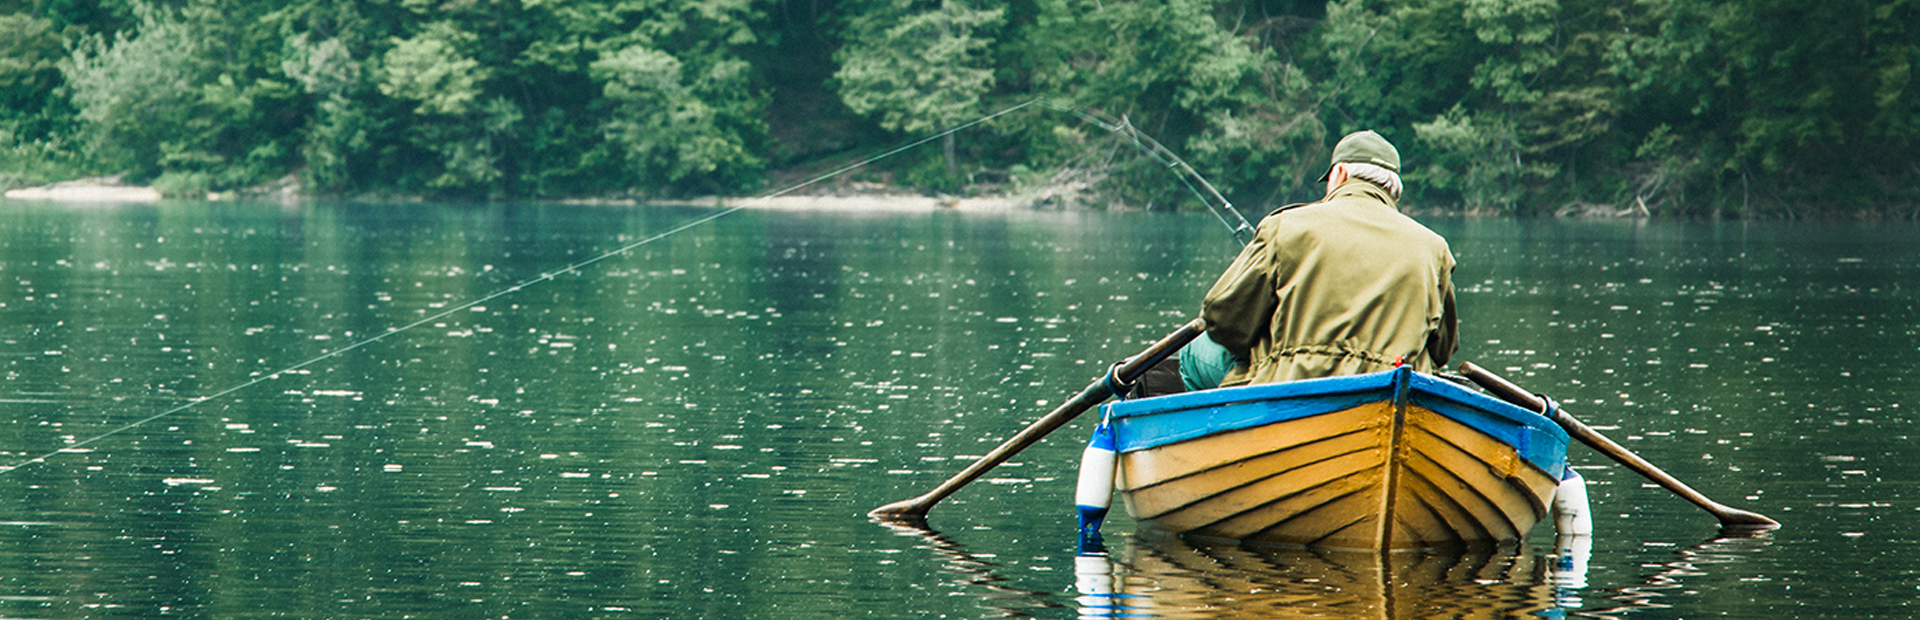 Na zdjęciu widnieje łowiący ryby mężczyzna siedzący na żółto-niebieskiej łódce pośrodku jeziora. Mężczyzna ubrany jest w zgniłozieloną kurtkę i czapkę, a naprężona żyłka wędki wskazuje na to, że zaraz zostania złowiona ryba.